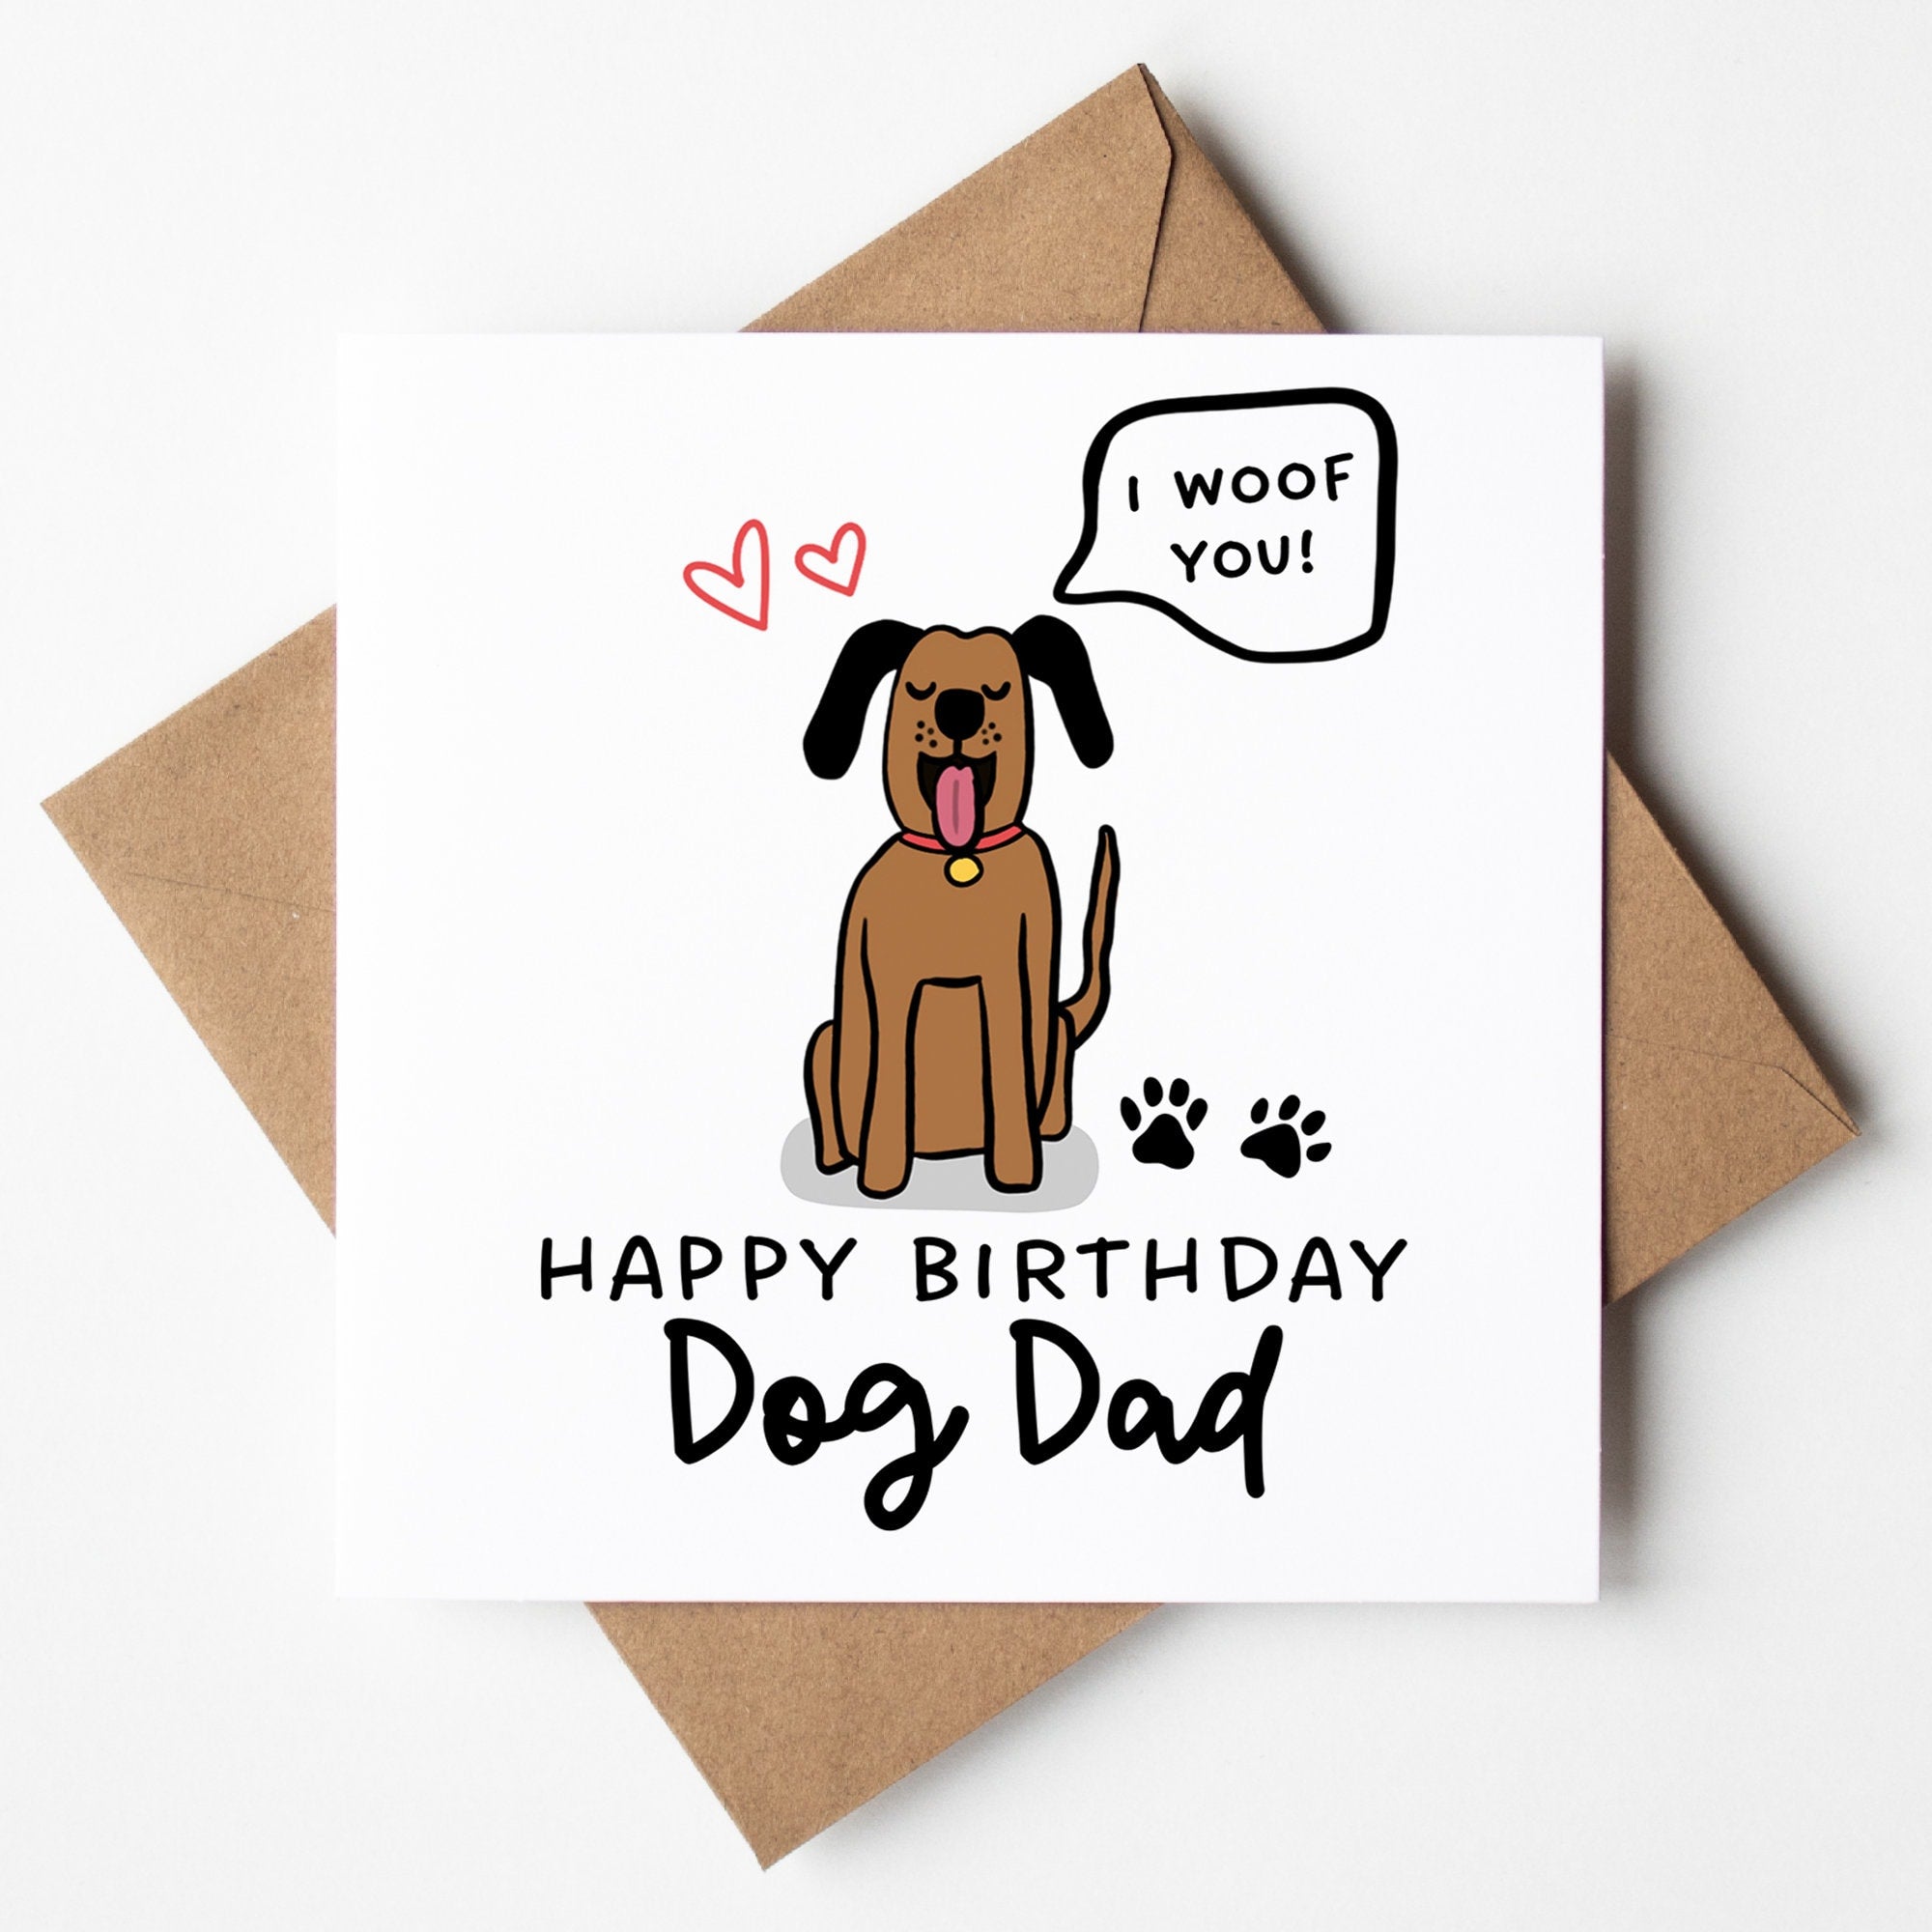 Dog Dad Birthday Card - Cute Birthday Card From The Dog